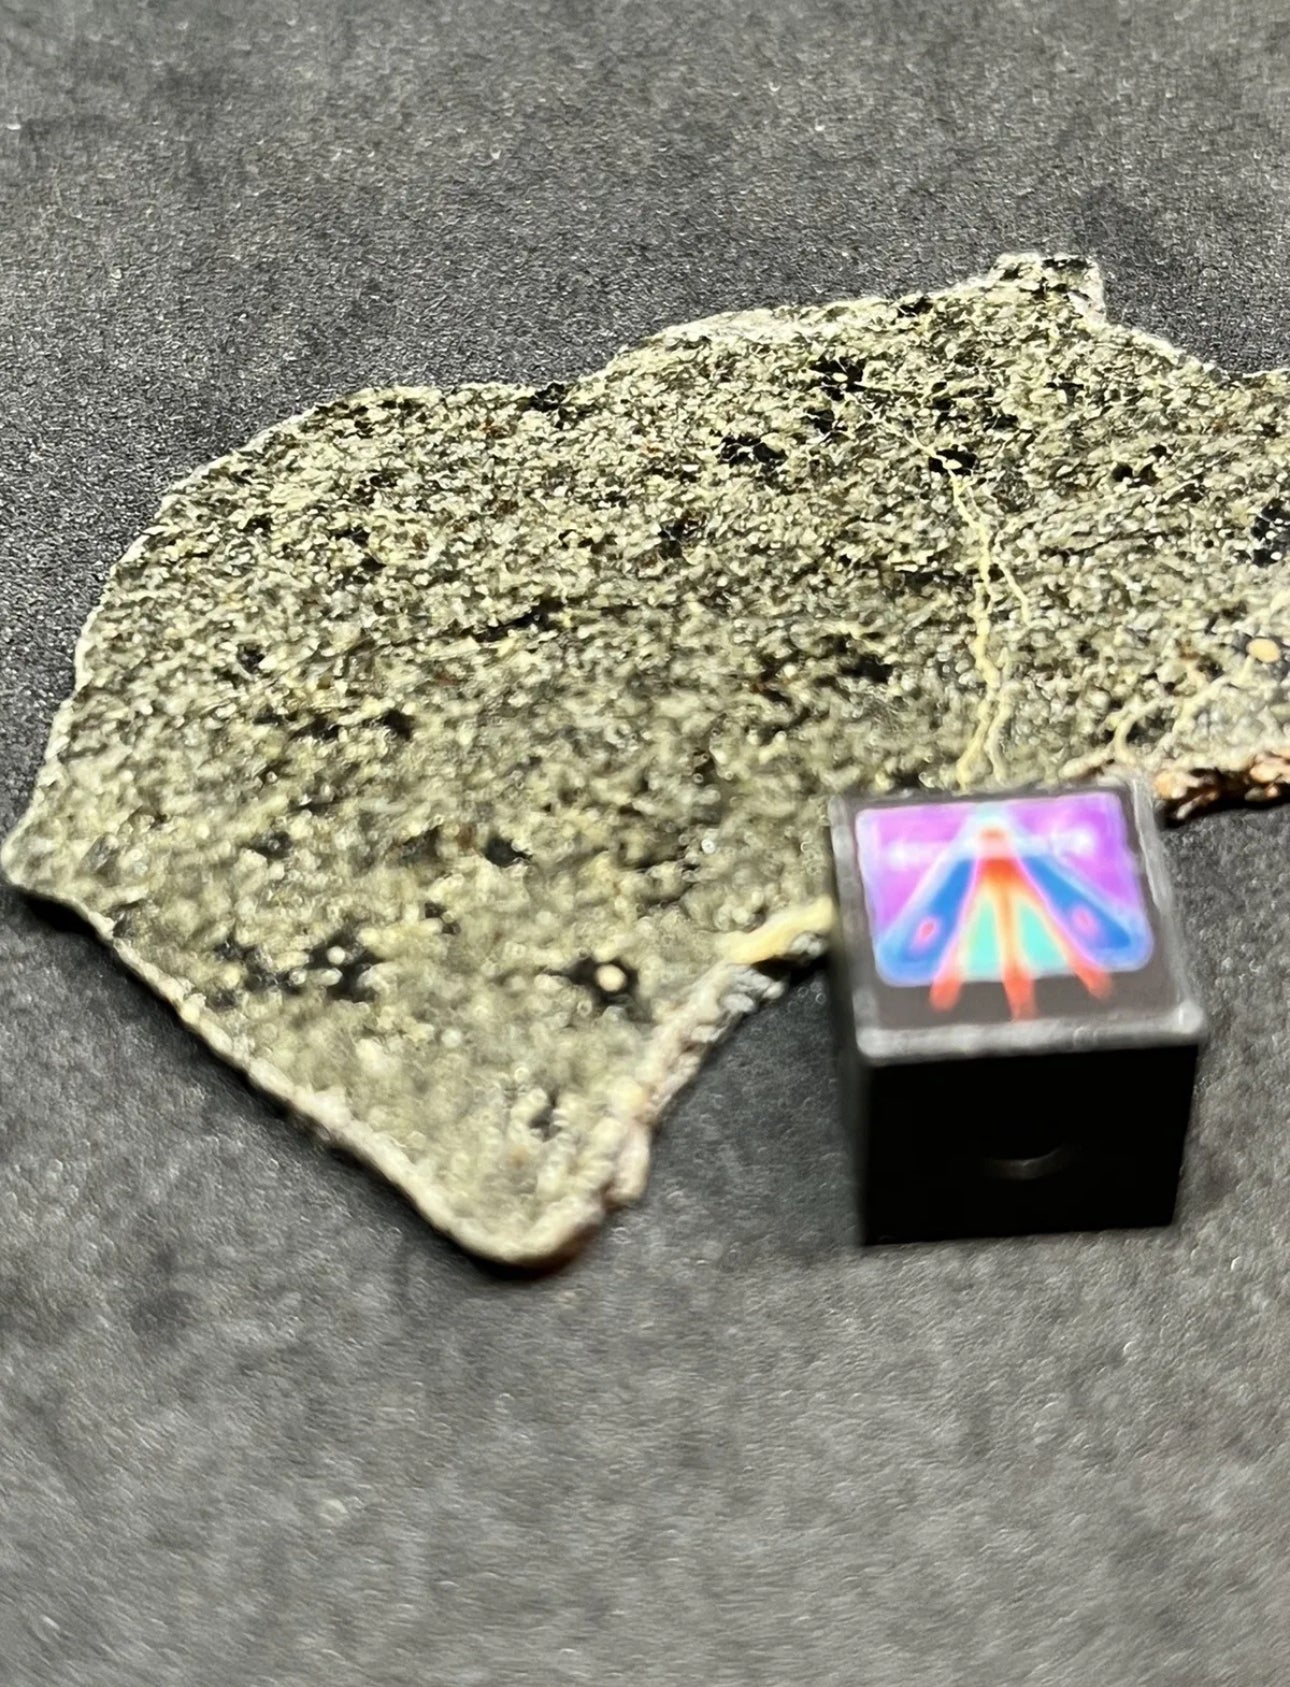 NWA 14714 Martian Shergottite Meteorite - Full Slice - 10.8g